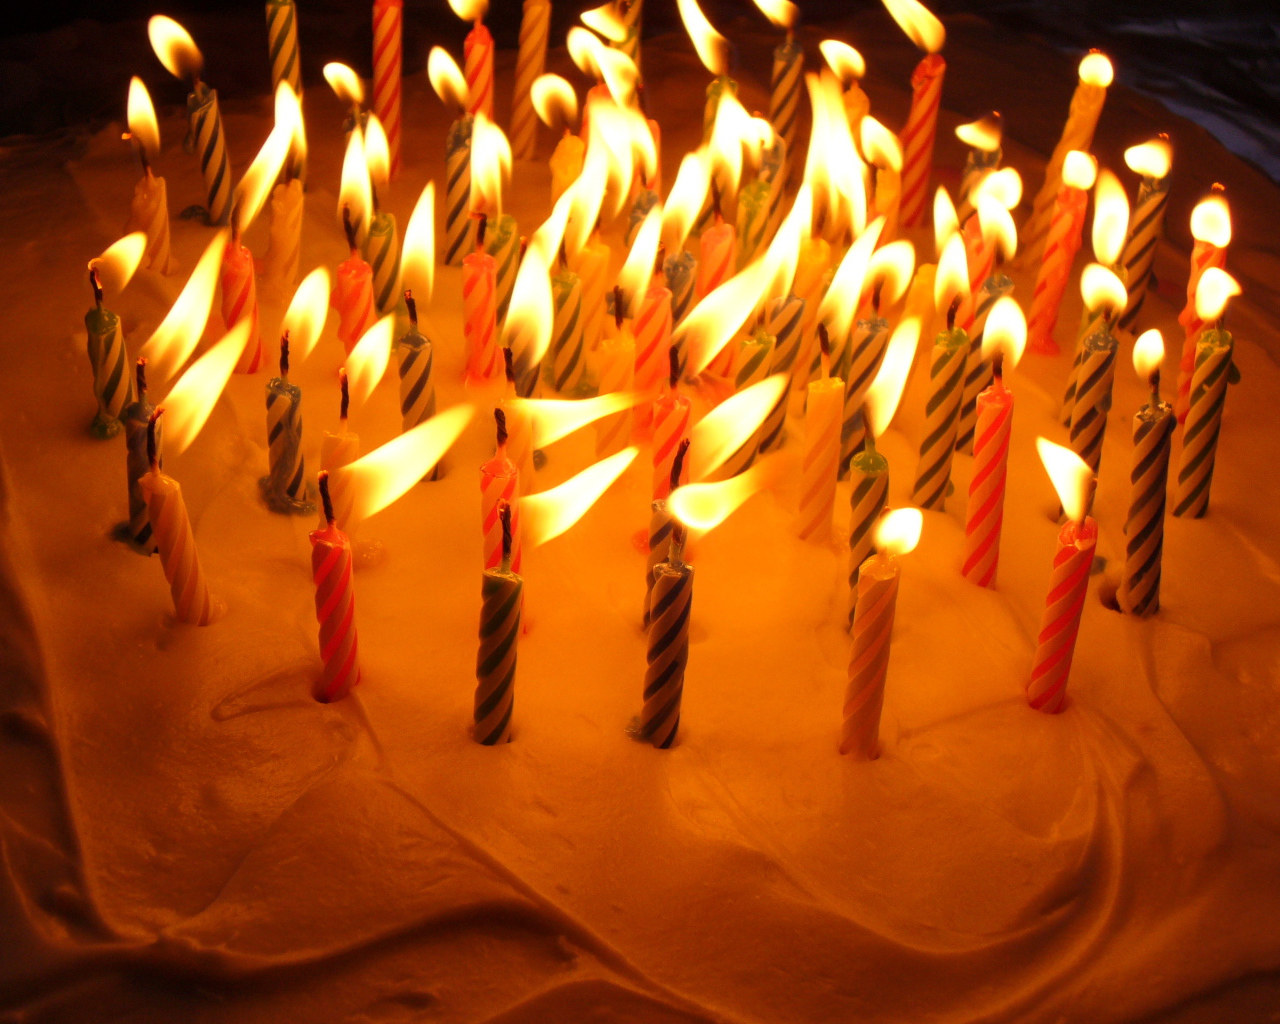 Разноцветные свечи кремовый торт на день рождения